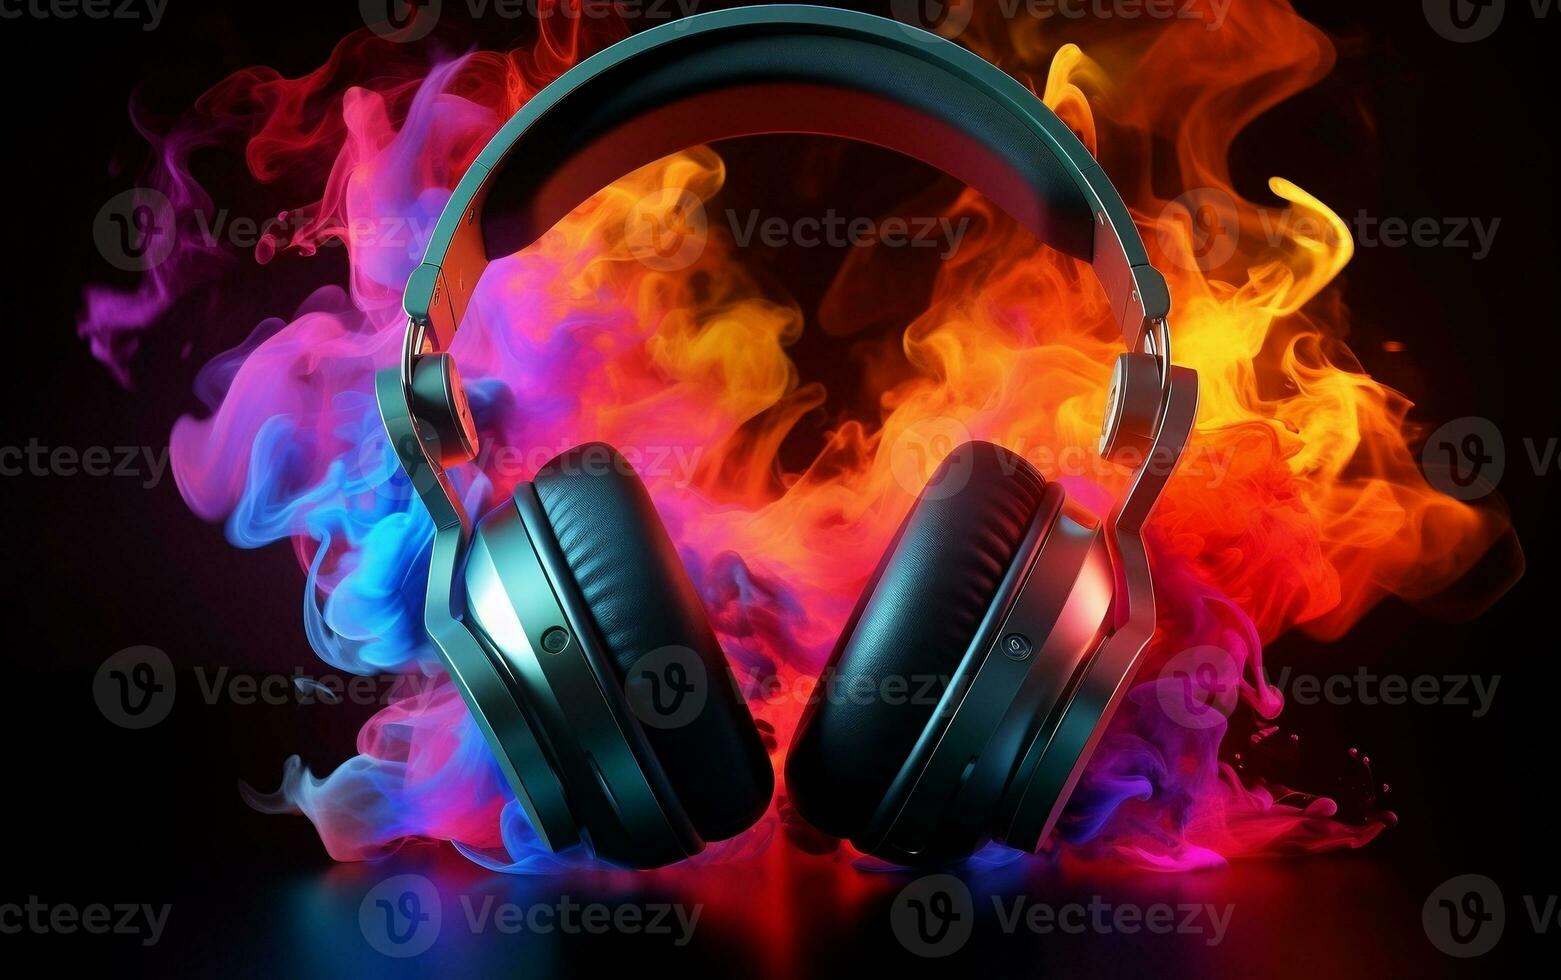 écouteurs avec coloré fumée photo